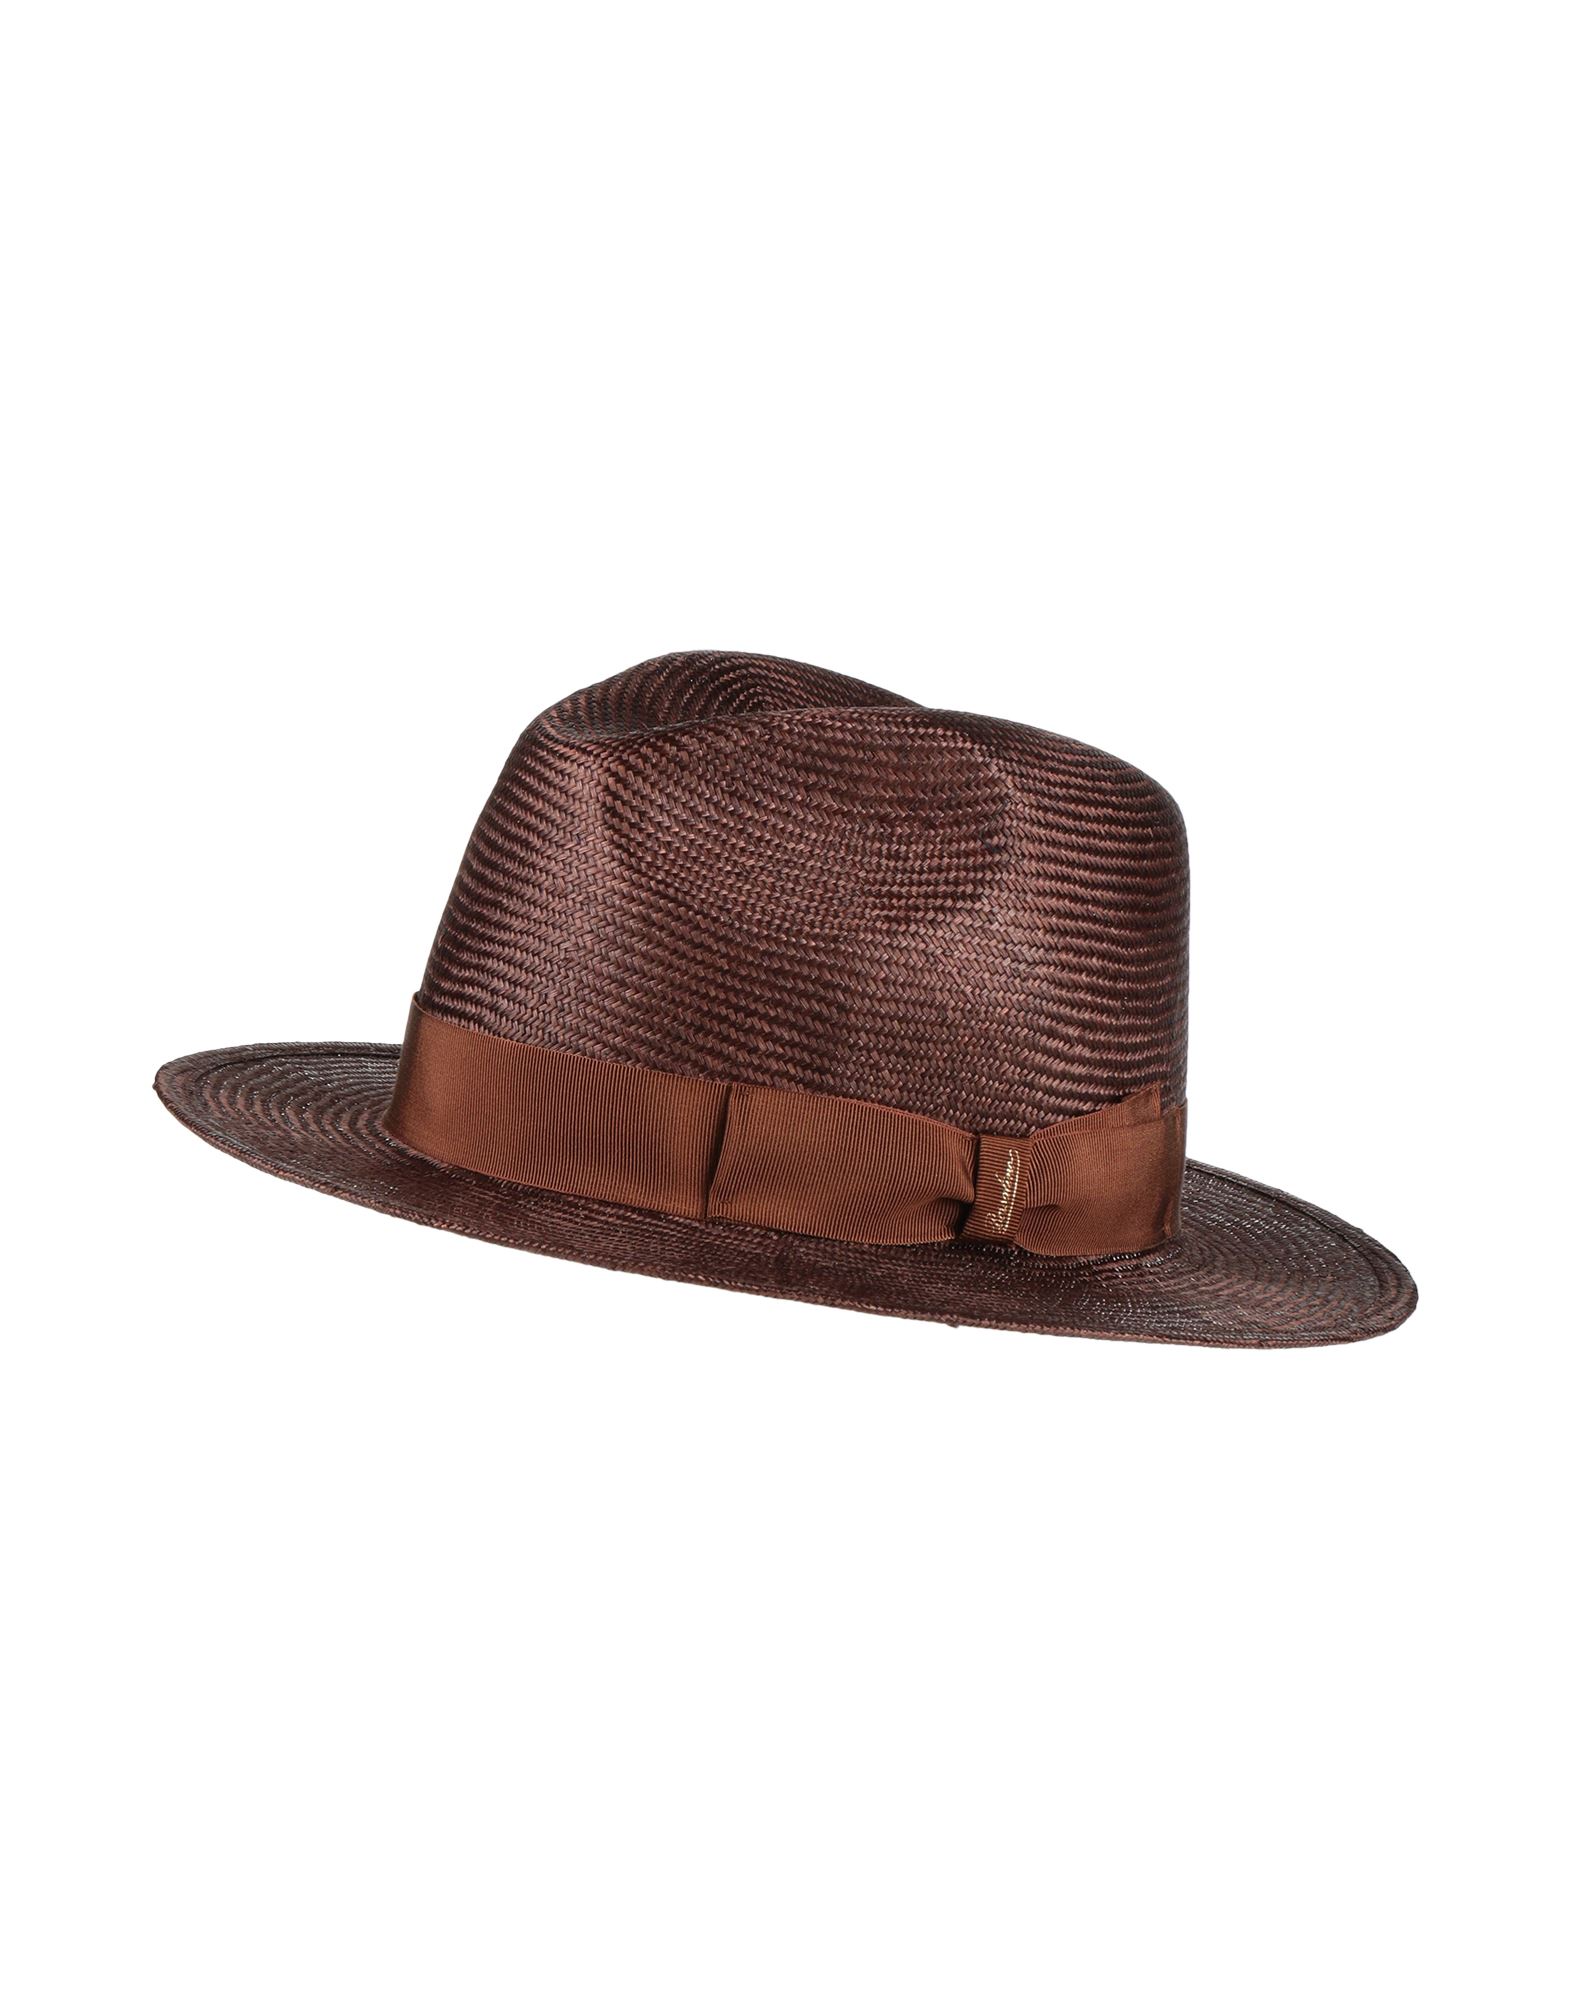 Shop Borsalino Man Hat Dark Brown Size 7 Straw